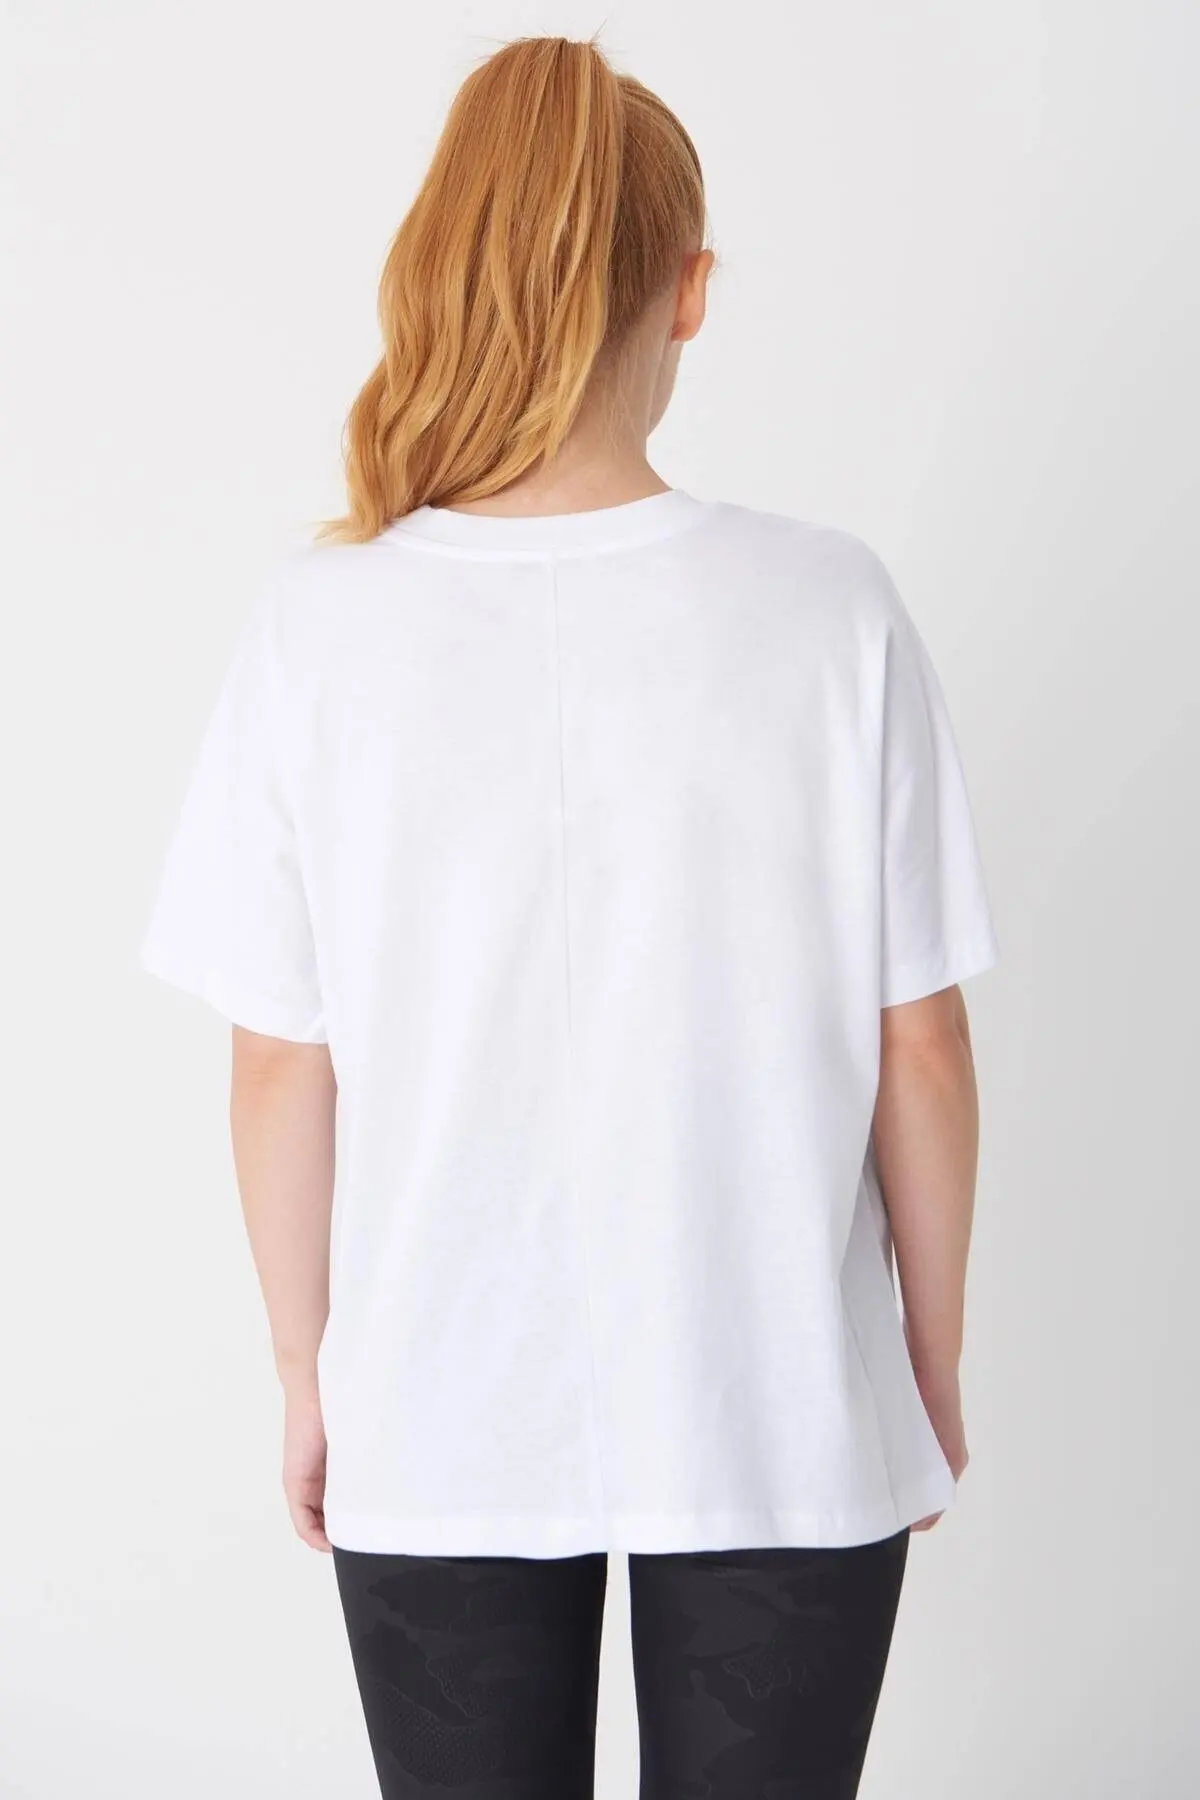 تیشرت اور سایز یقه گرد زنانه سفید برند Addax 